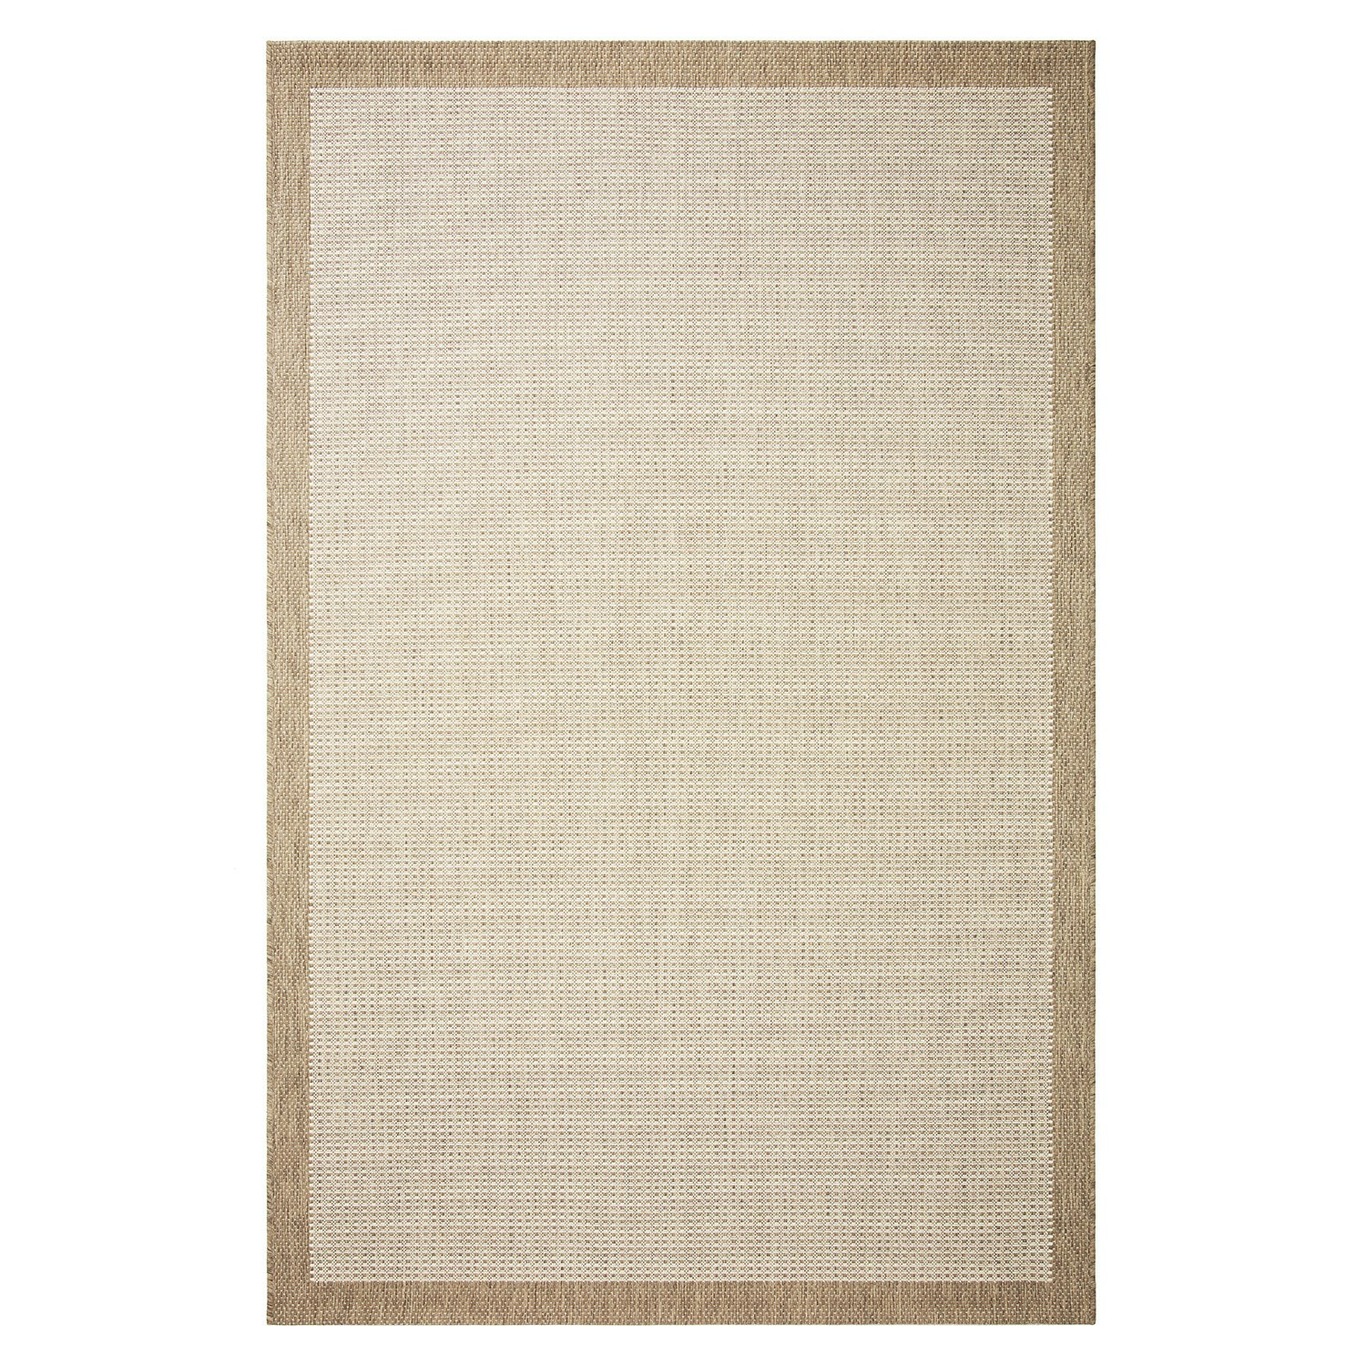 Bahar Outdoor Rug Beige/Off-white, 170x240 cm